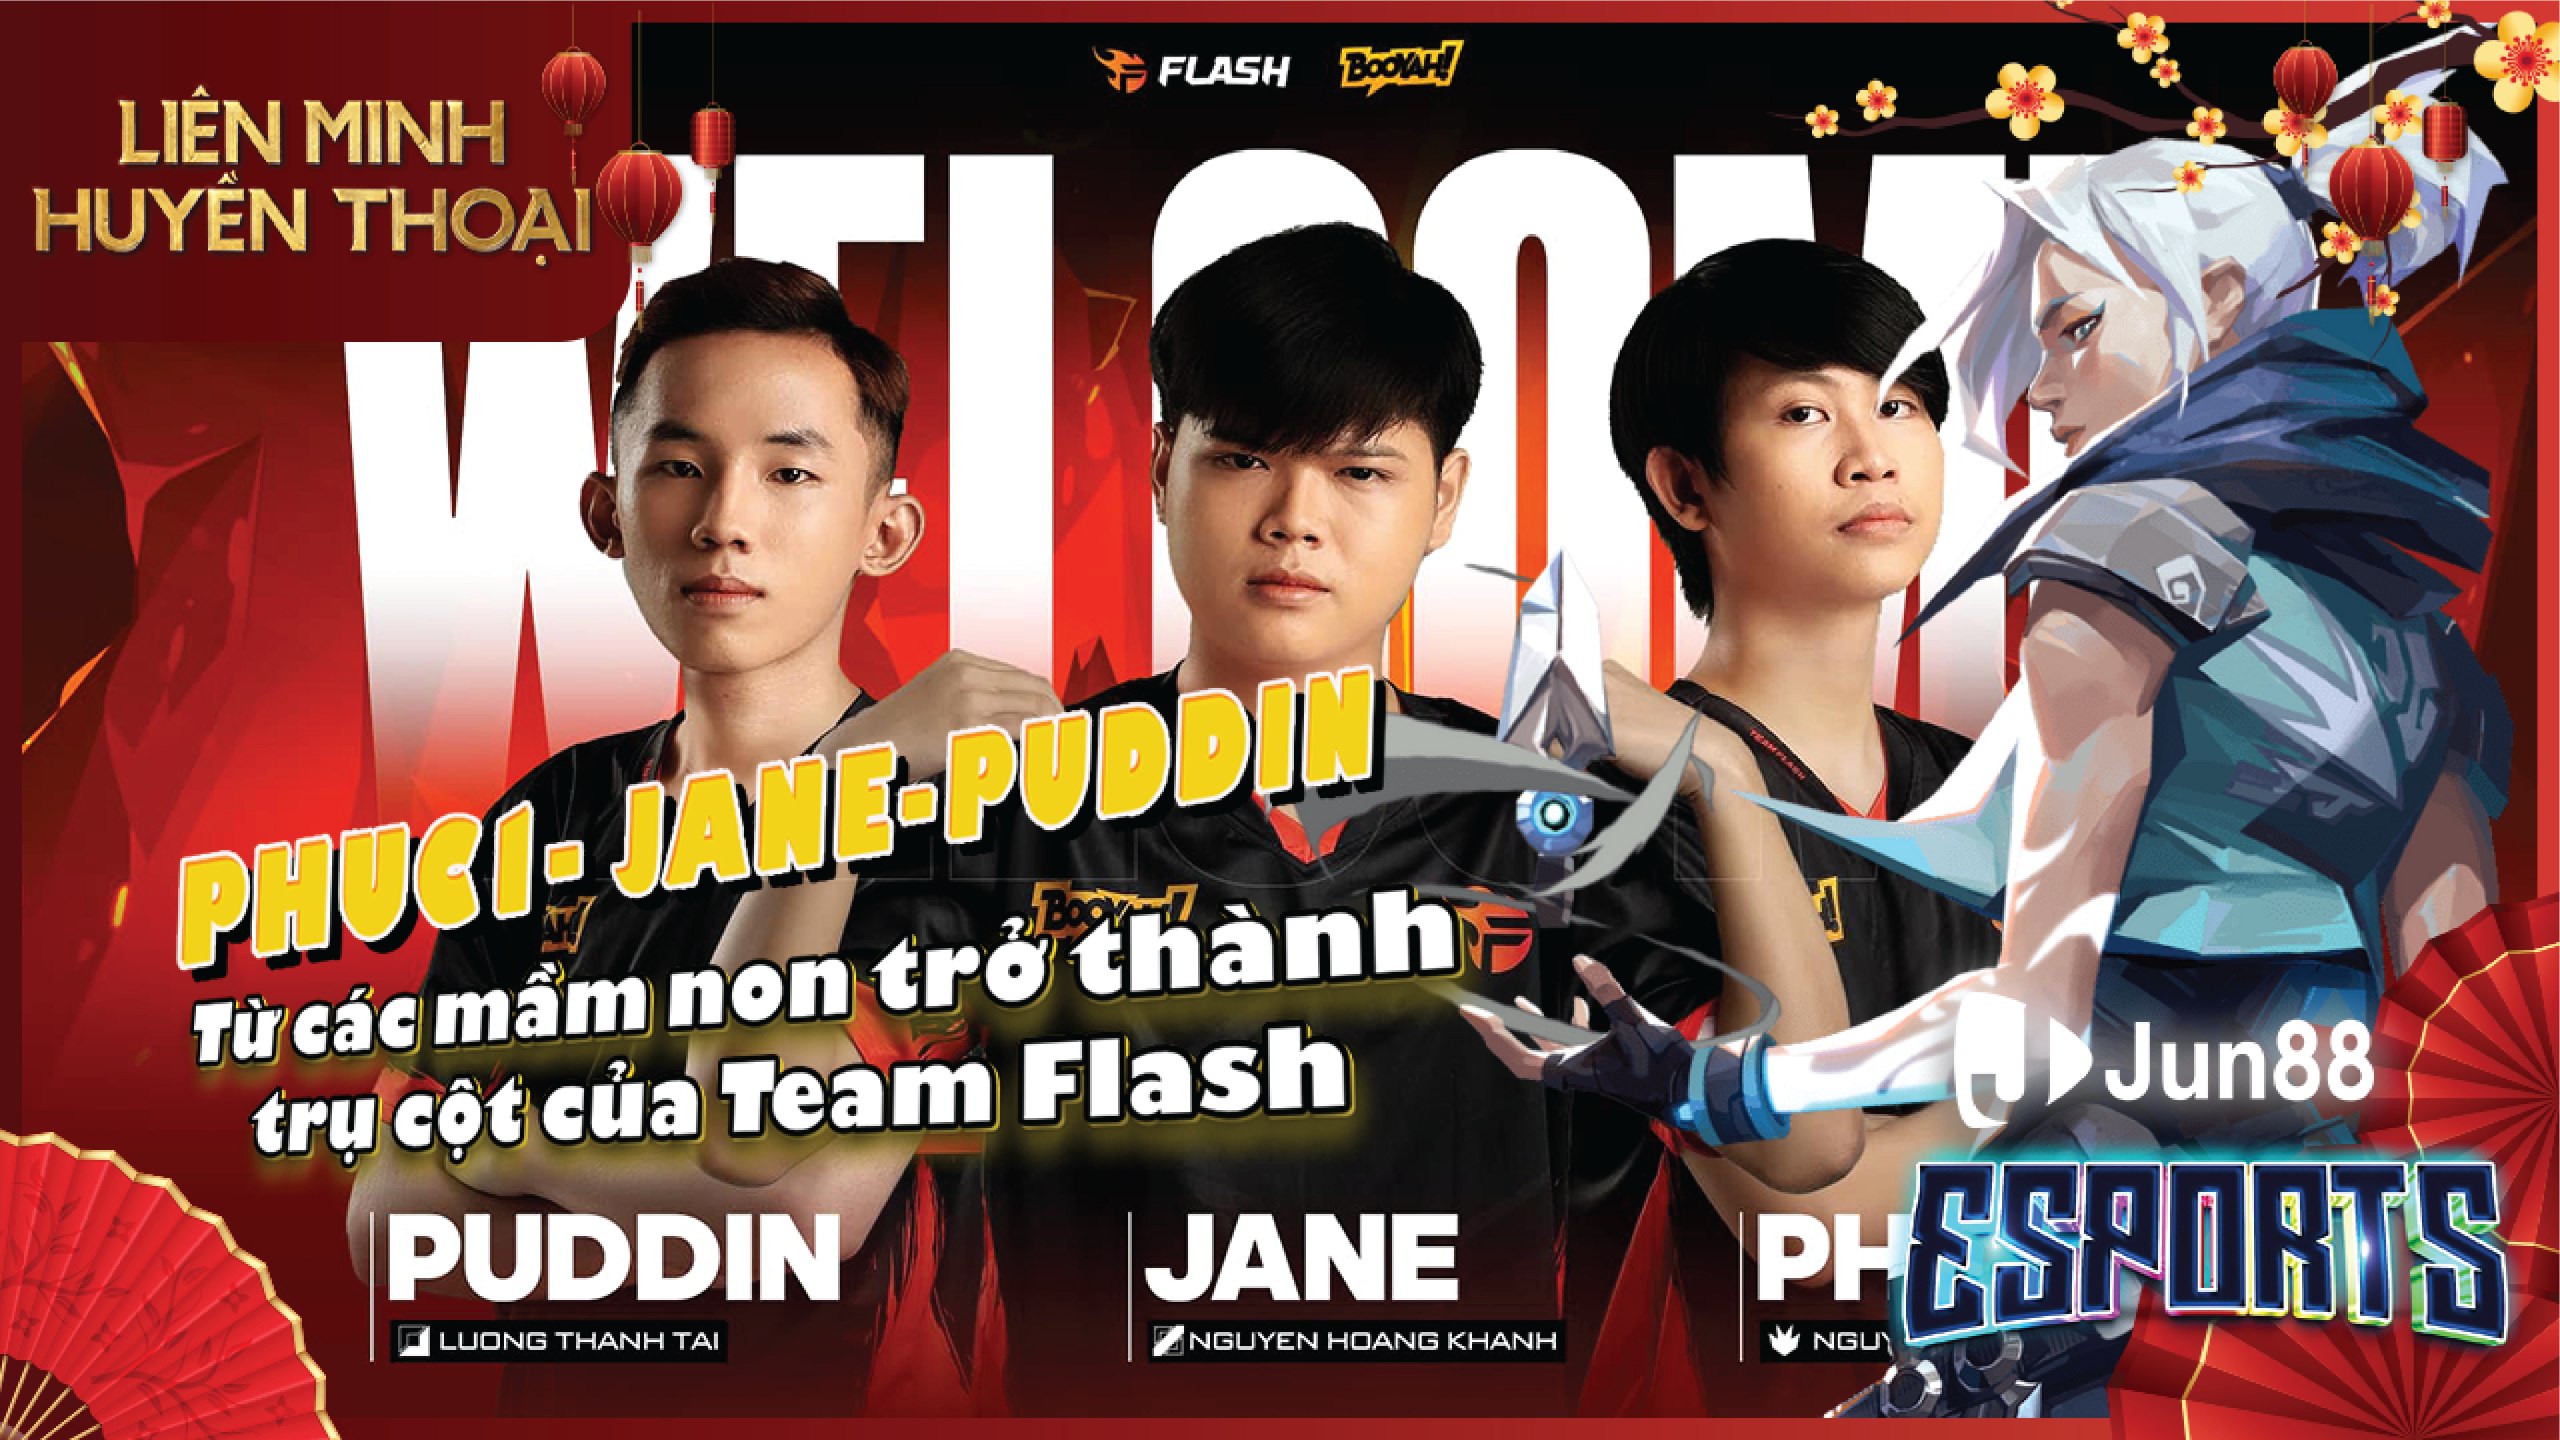 Jane - Phuc1 - Puddin từ các mầm non trở thành những trụ cột của Team Flash